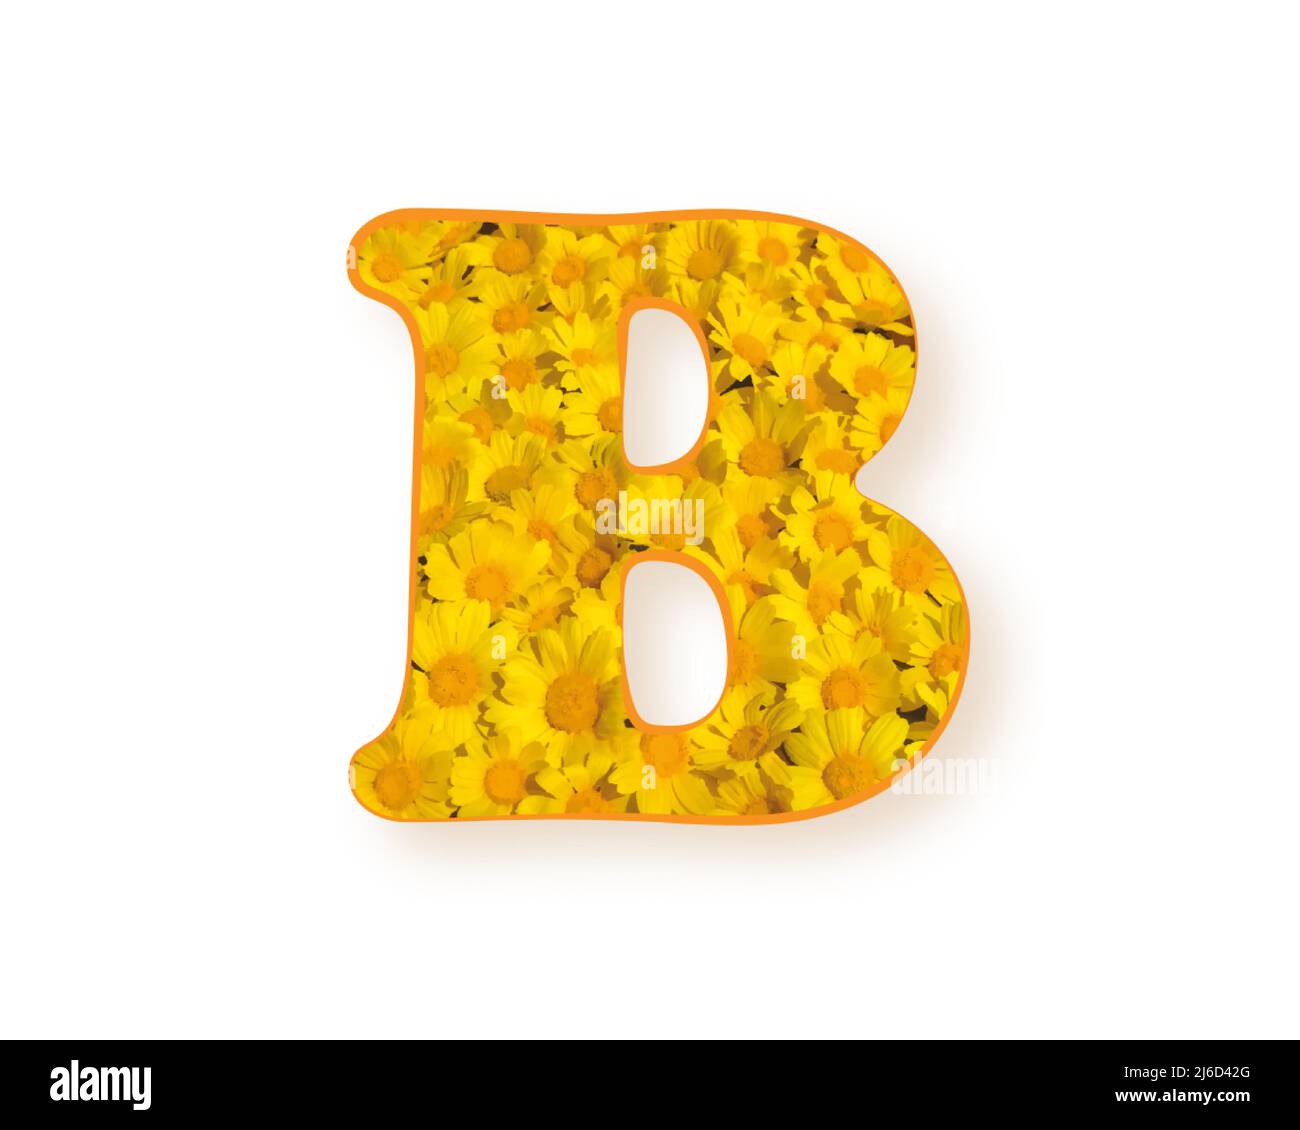 Buchstabe B-Logo. Gelbe Farbe Frühling Blume Großbuchstaben B, Design-Element Alphabet, Gänseblümchen-Textur, Vektor-Illustration isoliert auf weißem Hintergrund Stock Vektor